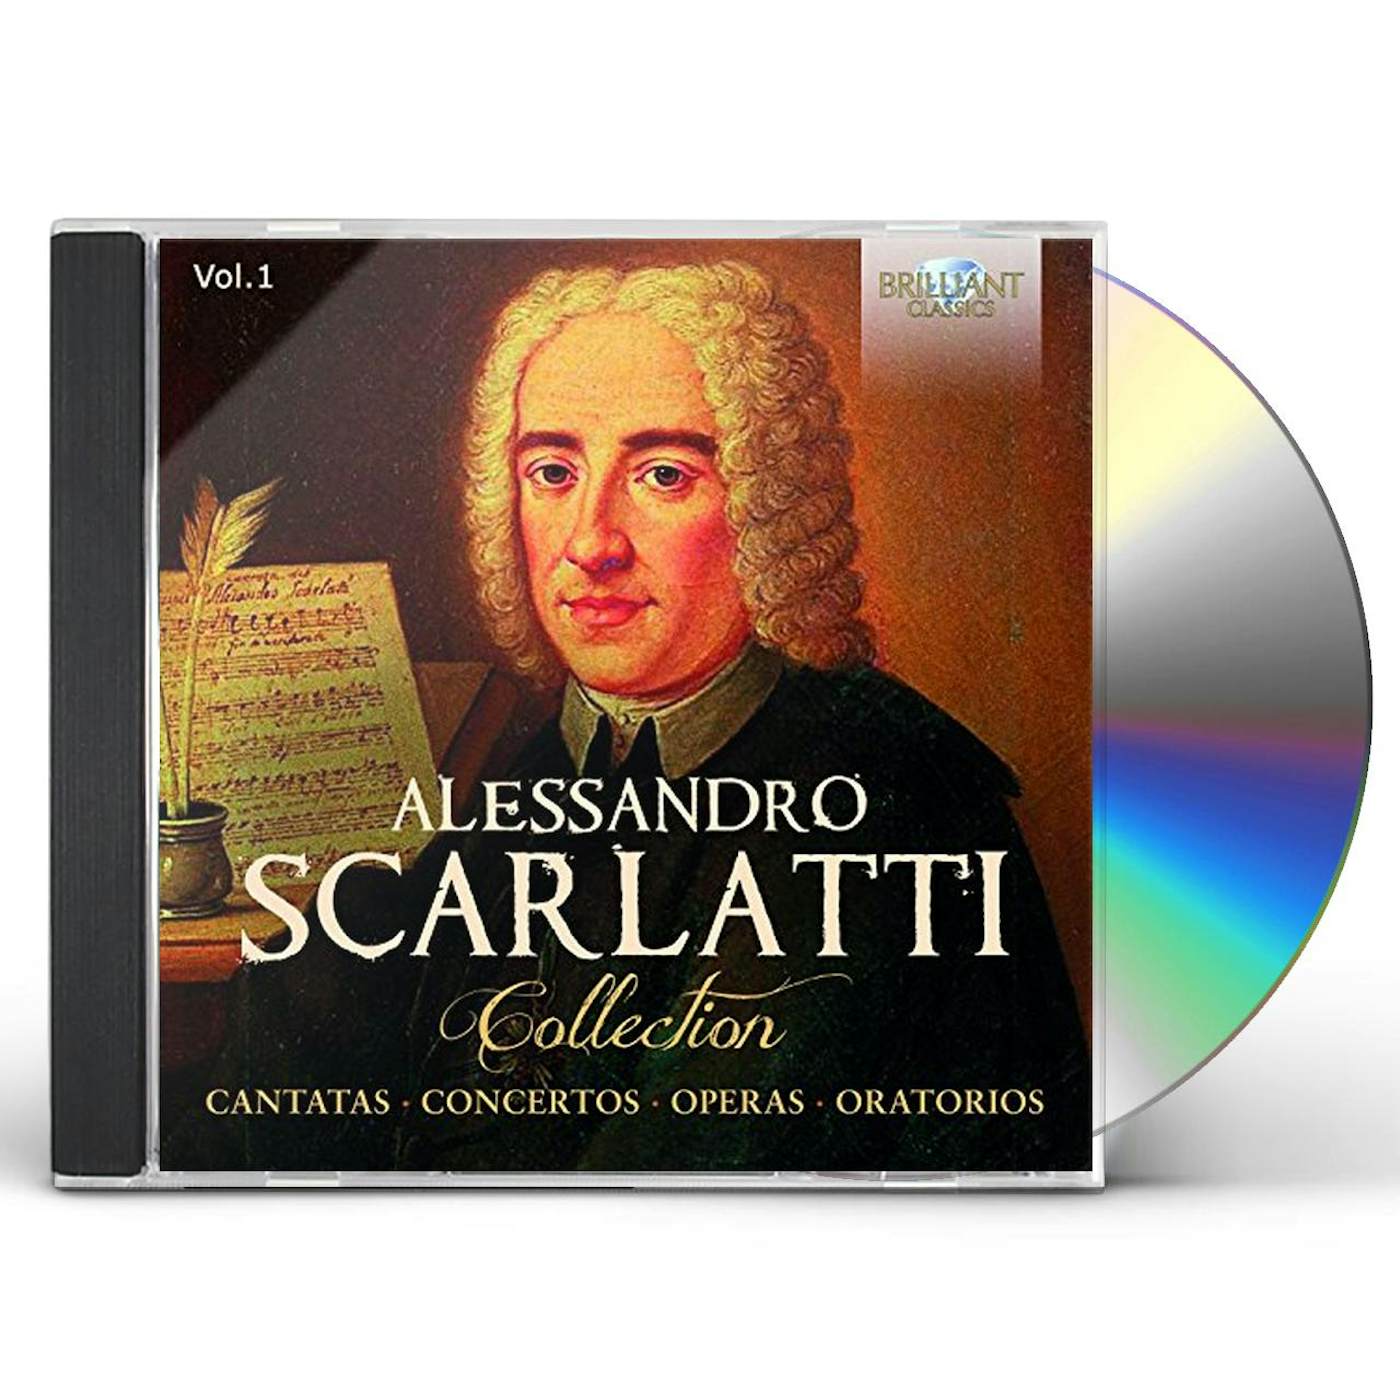 ALESSANDRO SCARLATTI COLLECTION 1 CD